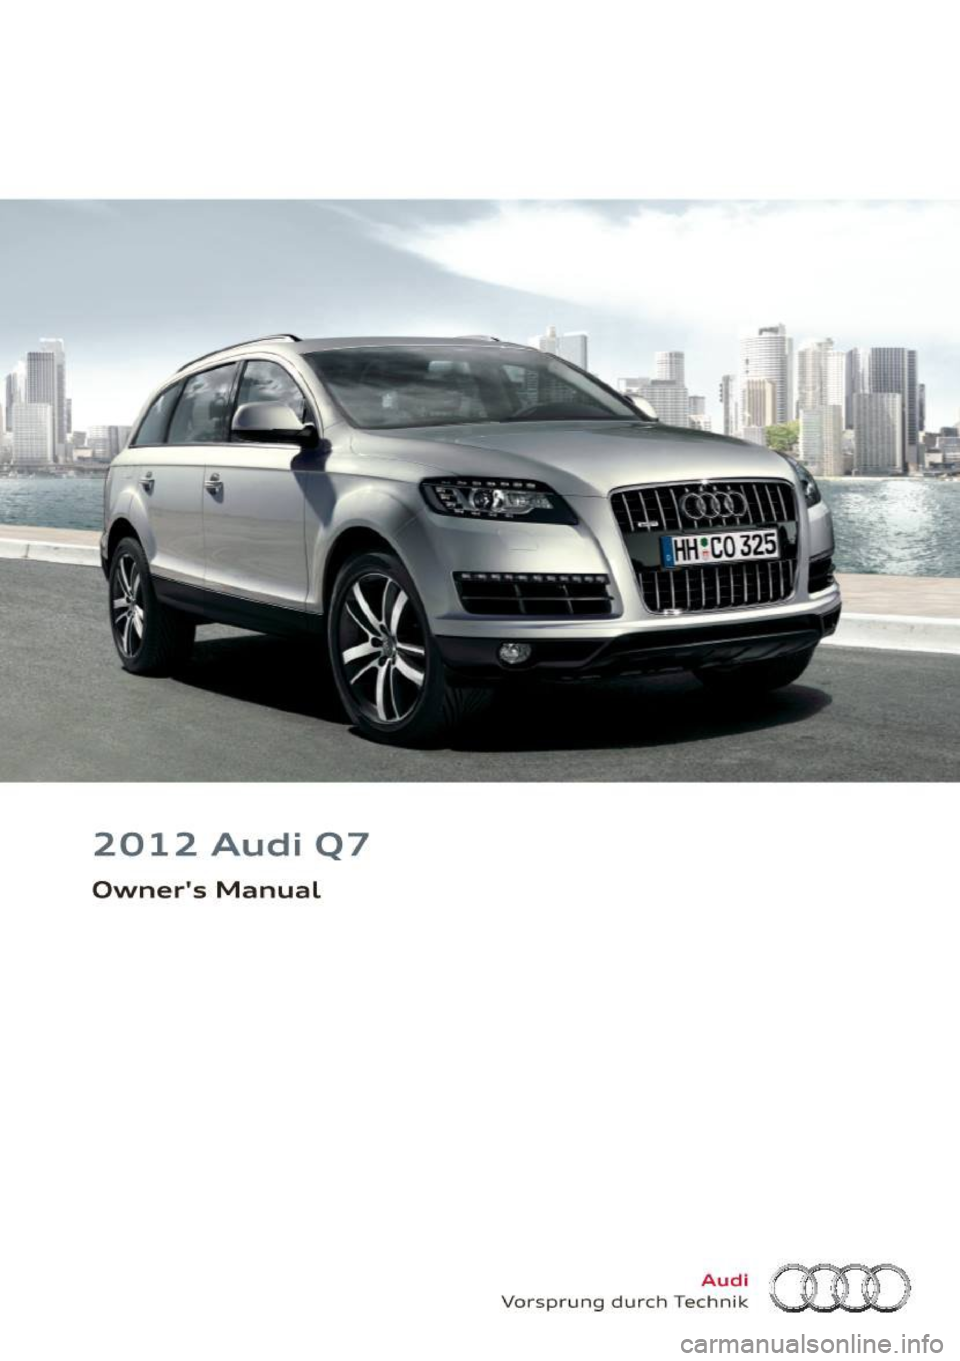 AUDI Q7 2012  Owner´s Manual 2012  Audi  Q7 
Owners  Manual 
Audi 
Vo rspr ung  du rch  Techn ik (HO  